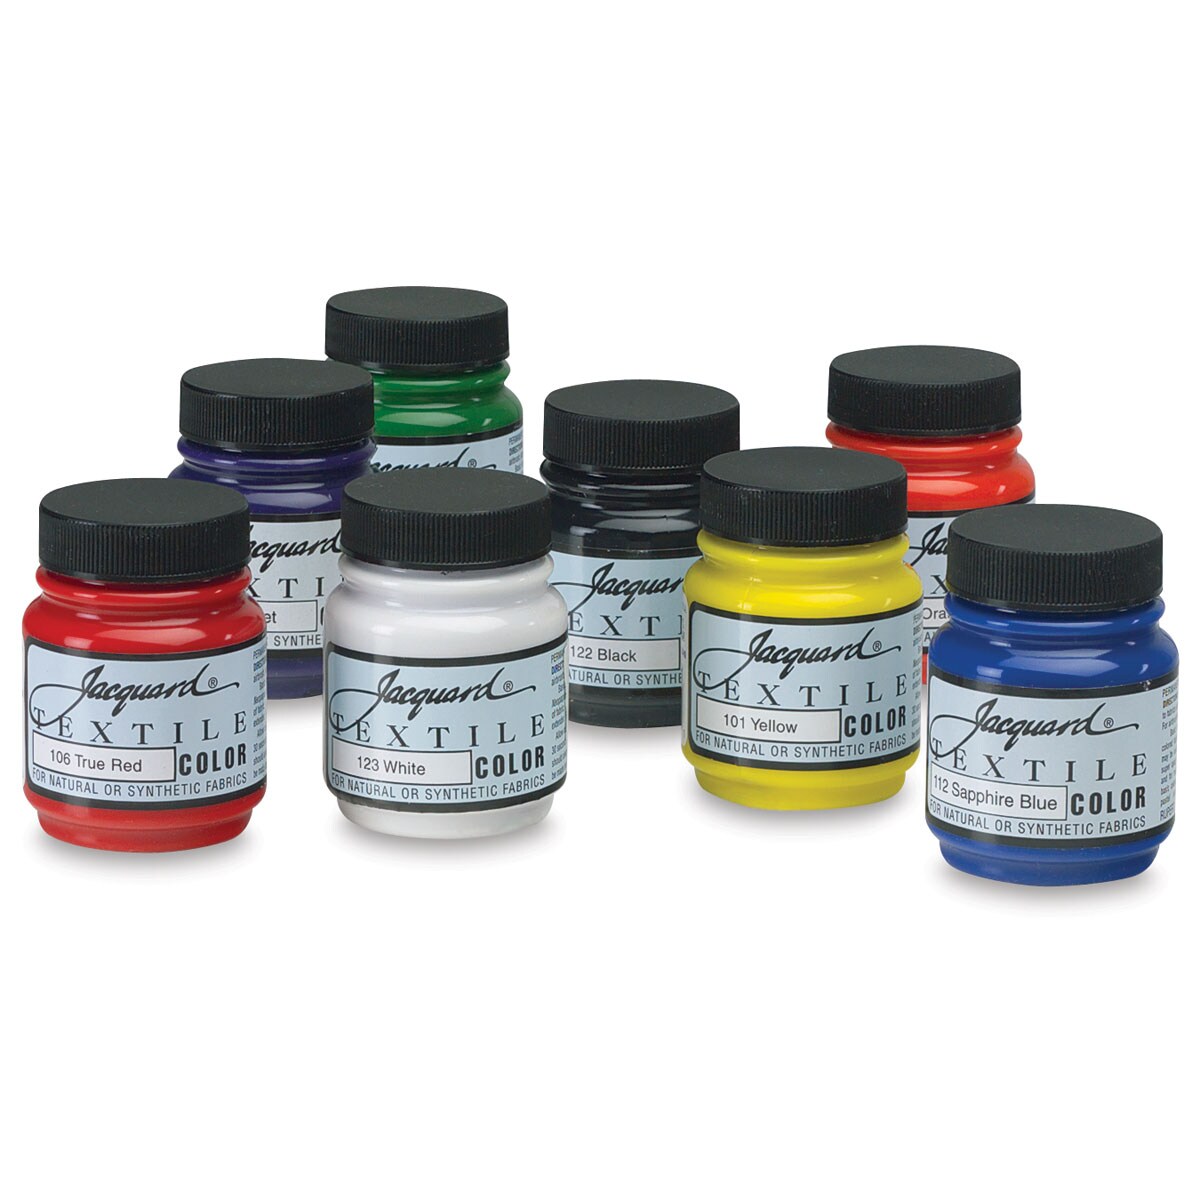 Jacquard Textile Color Set -Set of 8 Colors, 2.25 oz jars